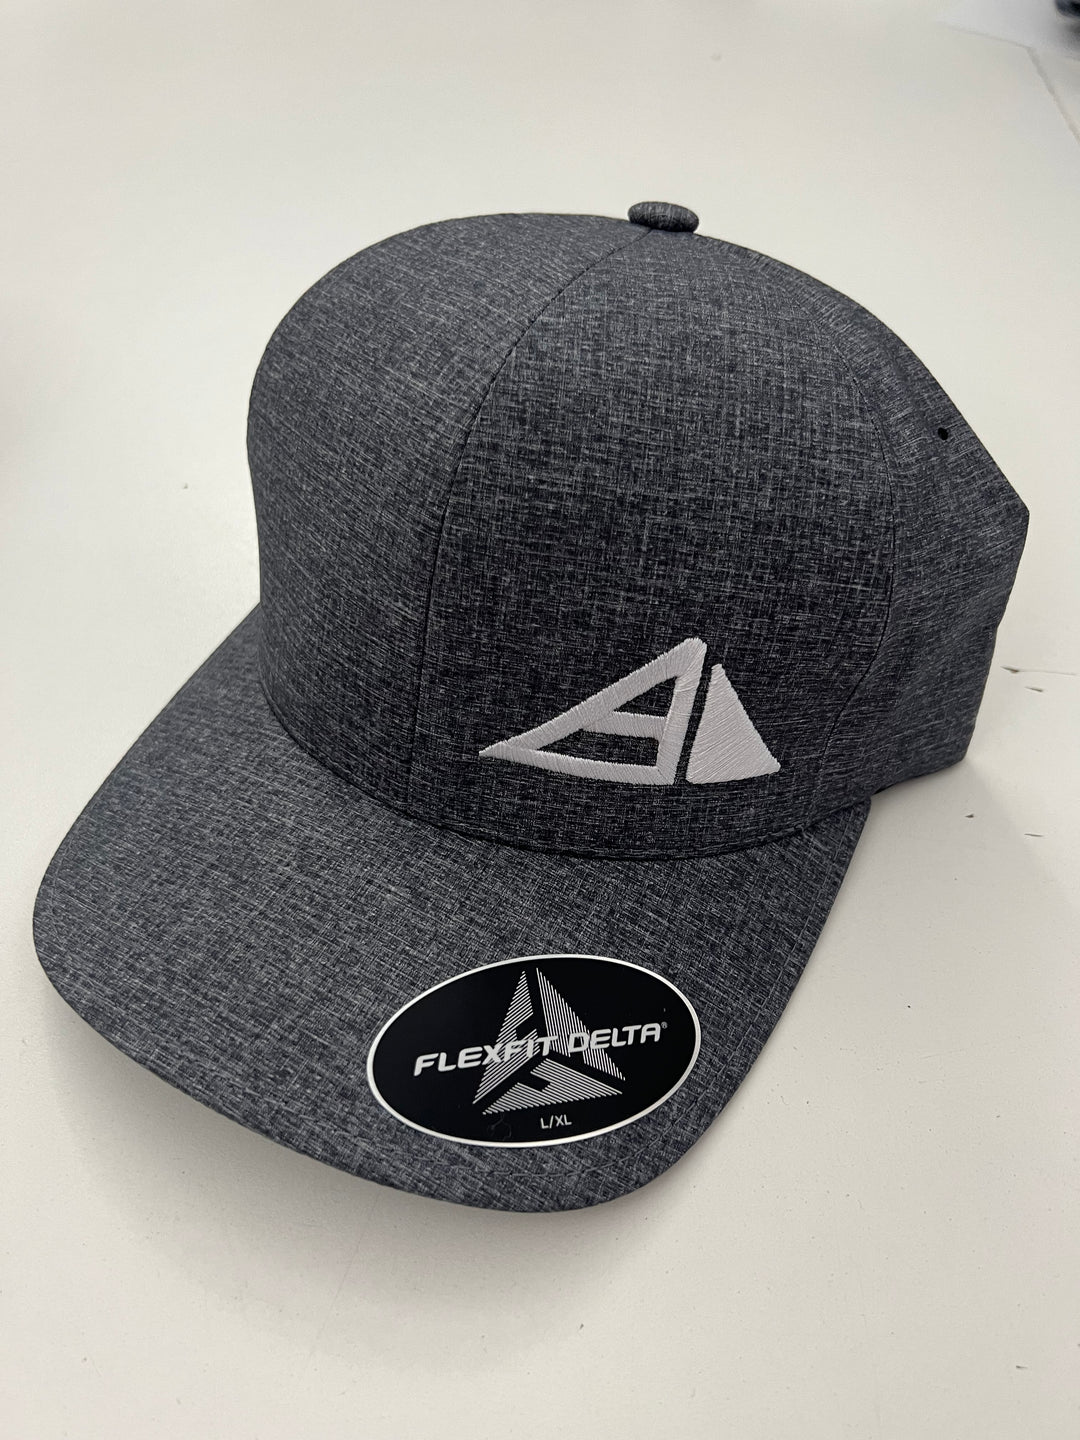 Axiom Flexfit Delta Carbon Hat Grey